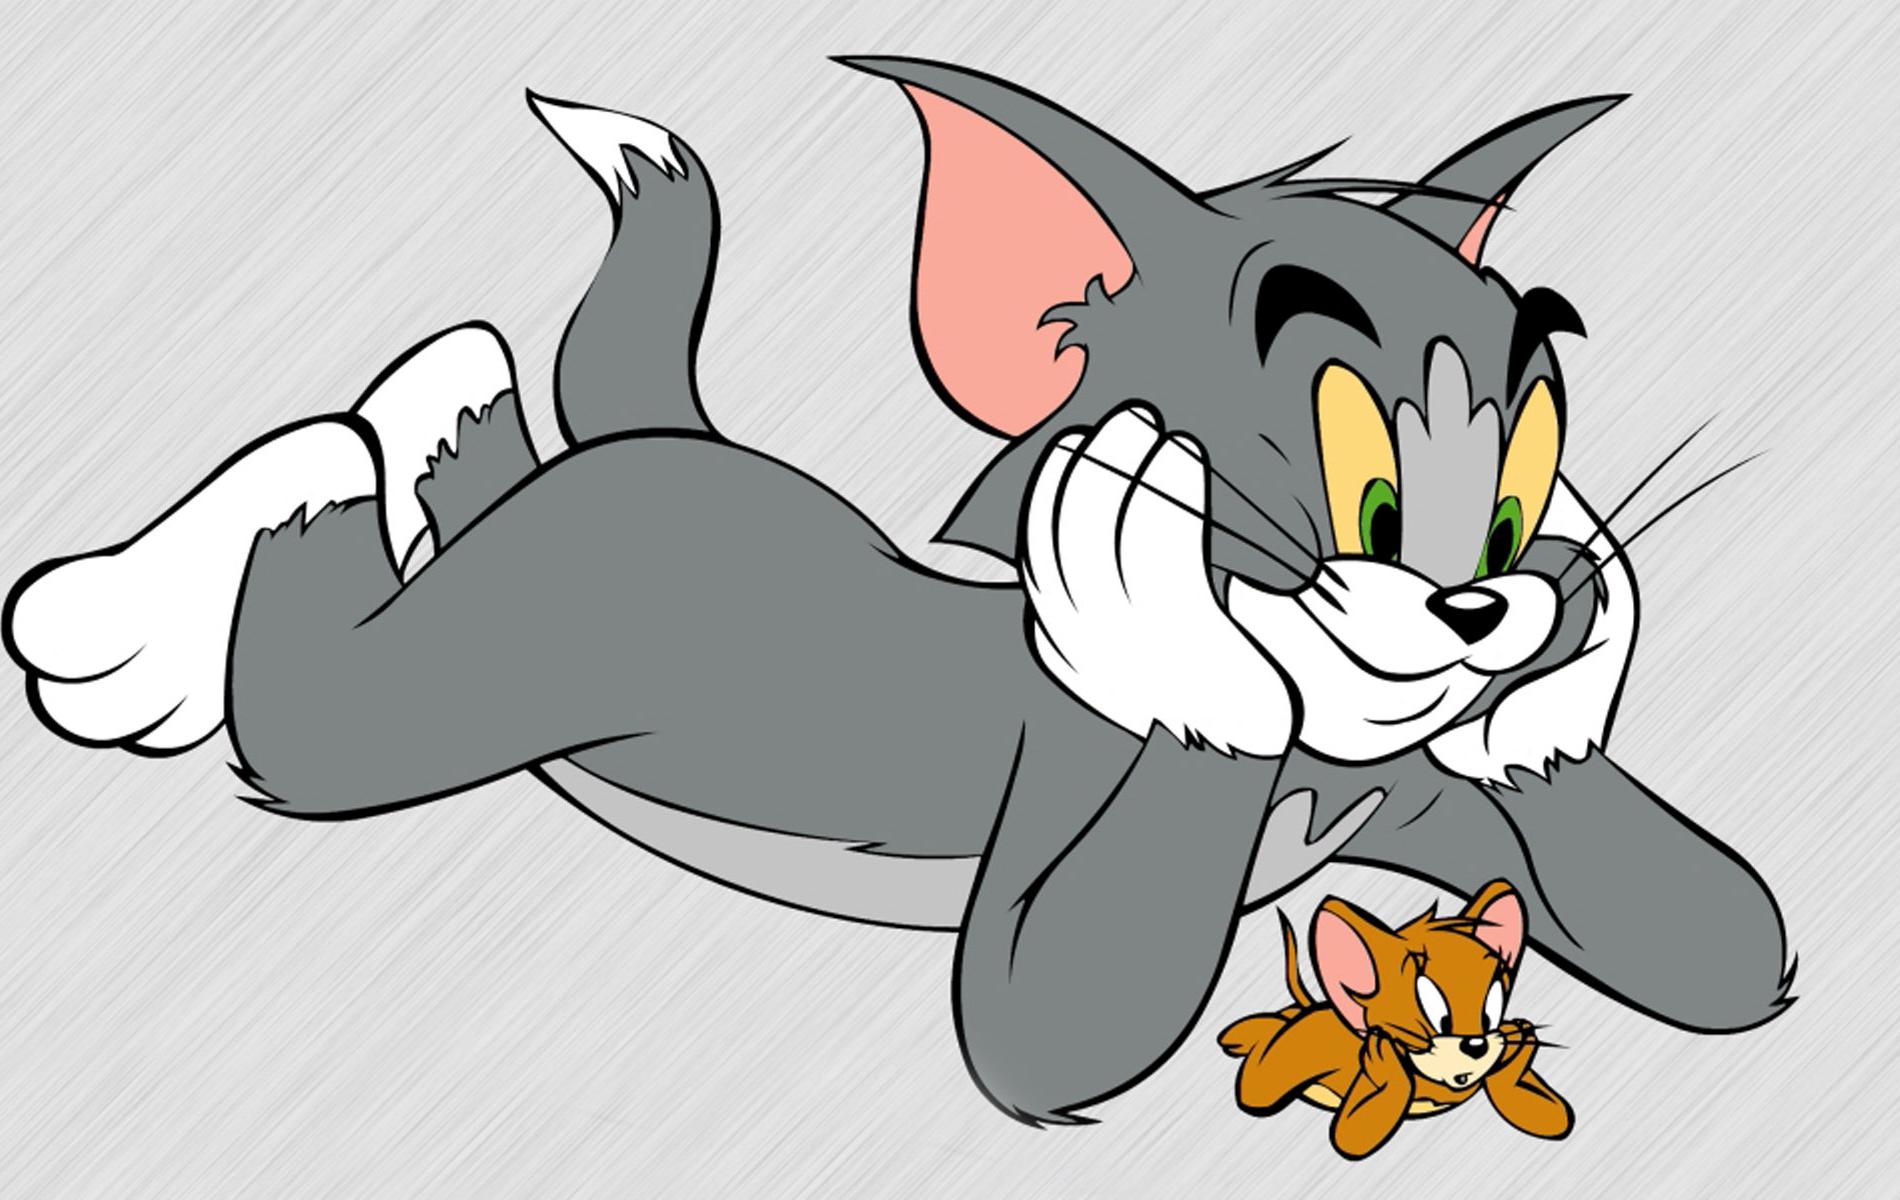 Dù luôn rượt đuổi nhau nhưng đôi khi Tom và Jerry cũng có những cảm xúc tương tự